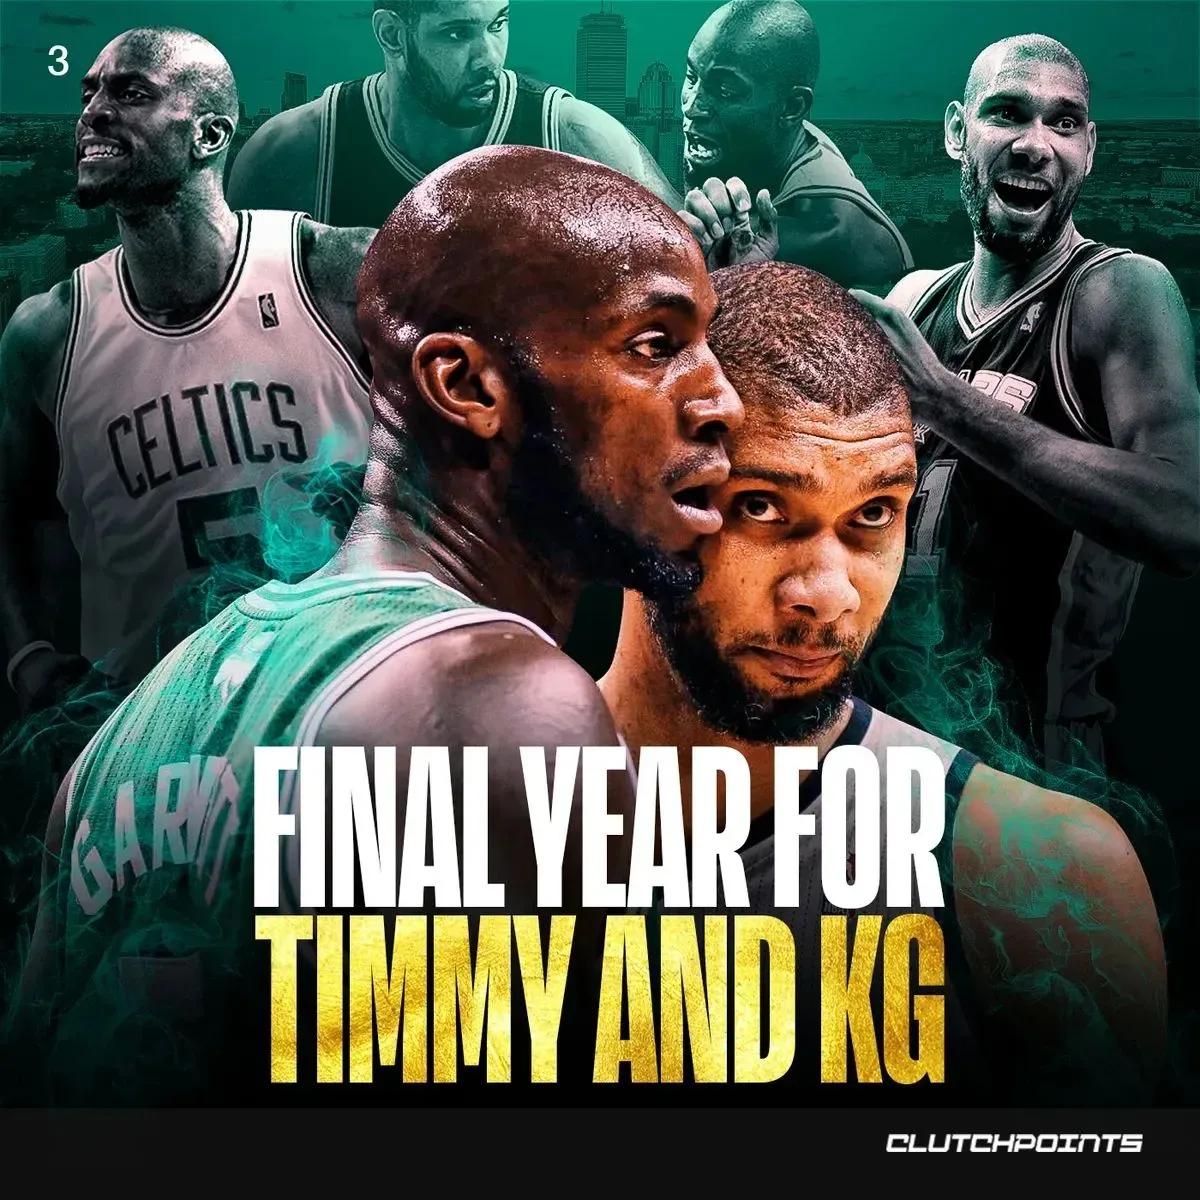 2015-16赛季为何是NBA史上最伟大的赛季没有之一，记住这七大事件